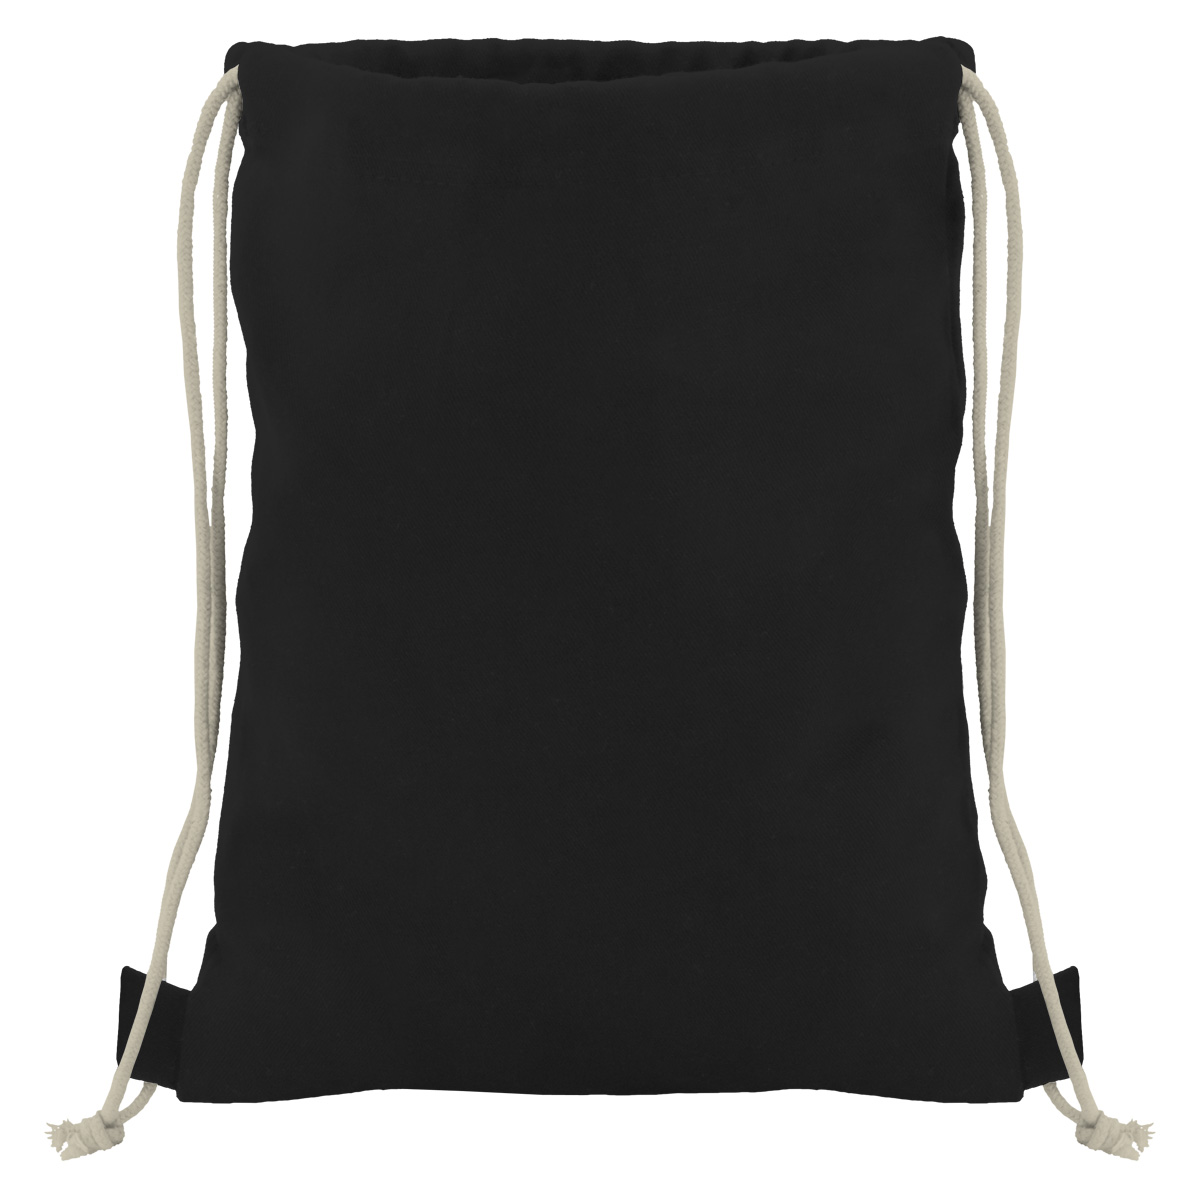 Baumwollrucksack mit robuster Kordel - schwarz/natur - 36 cm x 44 cm